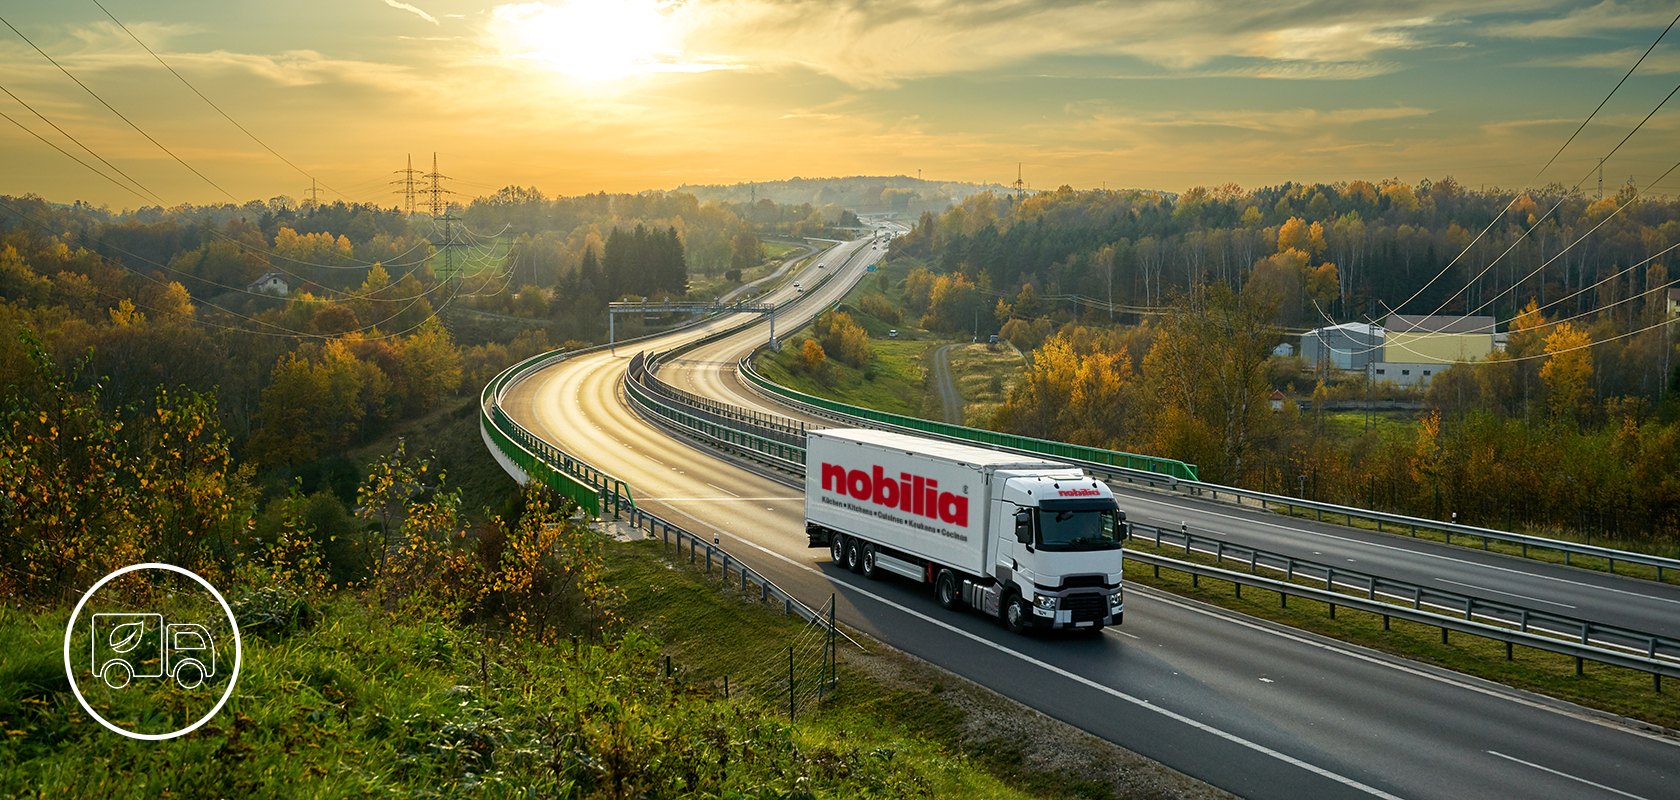 Un camion commercial de la marque "nobilia" roule sur une autoroute sinueuse au milieu d'un paysage automnal vibrant avec des feuillages et des collines lointaines.